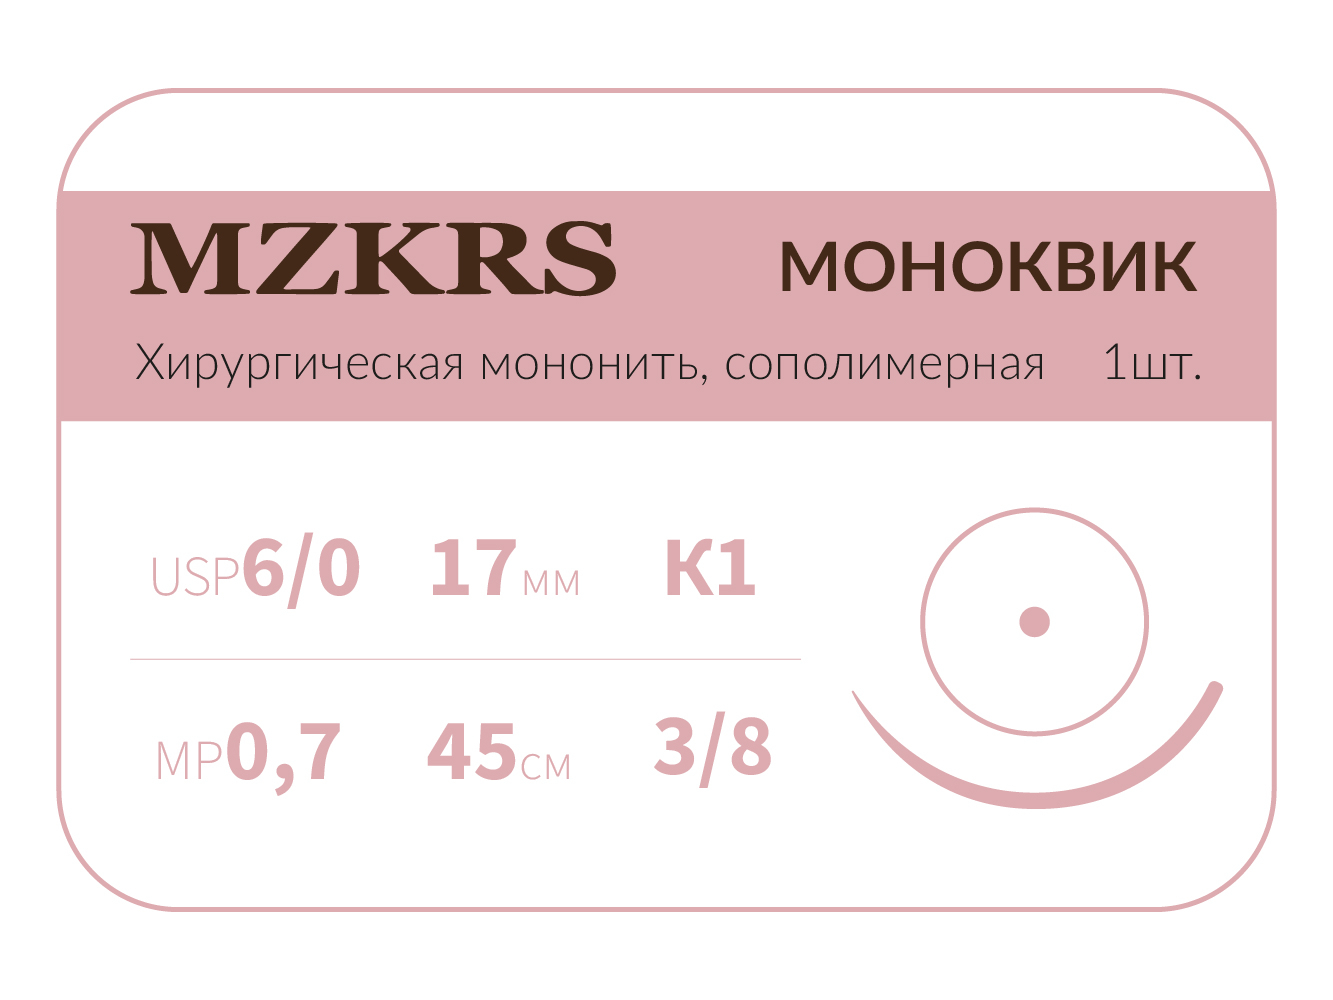 1738К1 Premium-6/0 (0,7)45 МОНК МОНОКВИК хирургическая мононить, сополимерная, MZKRS (Россия)